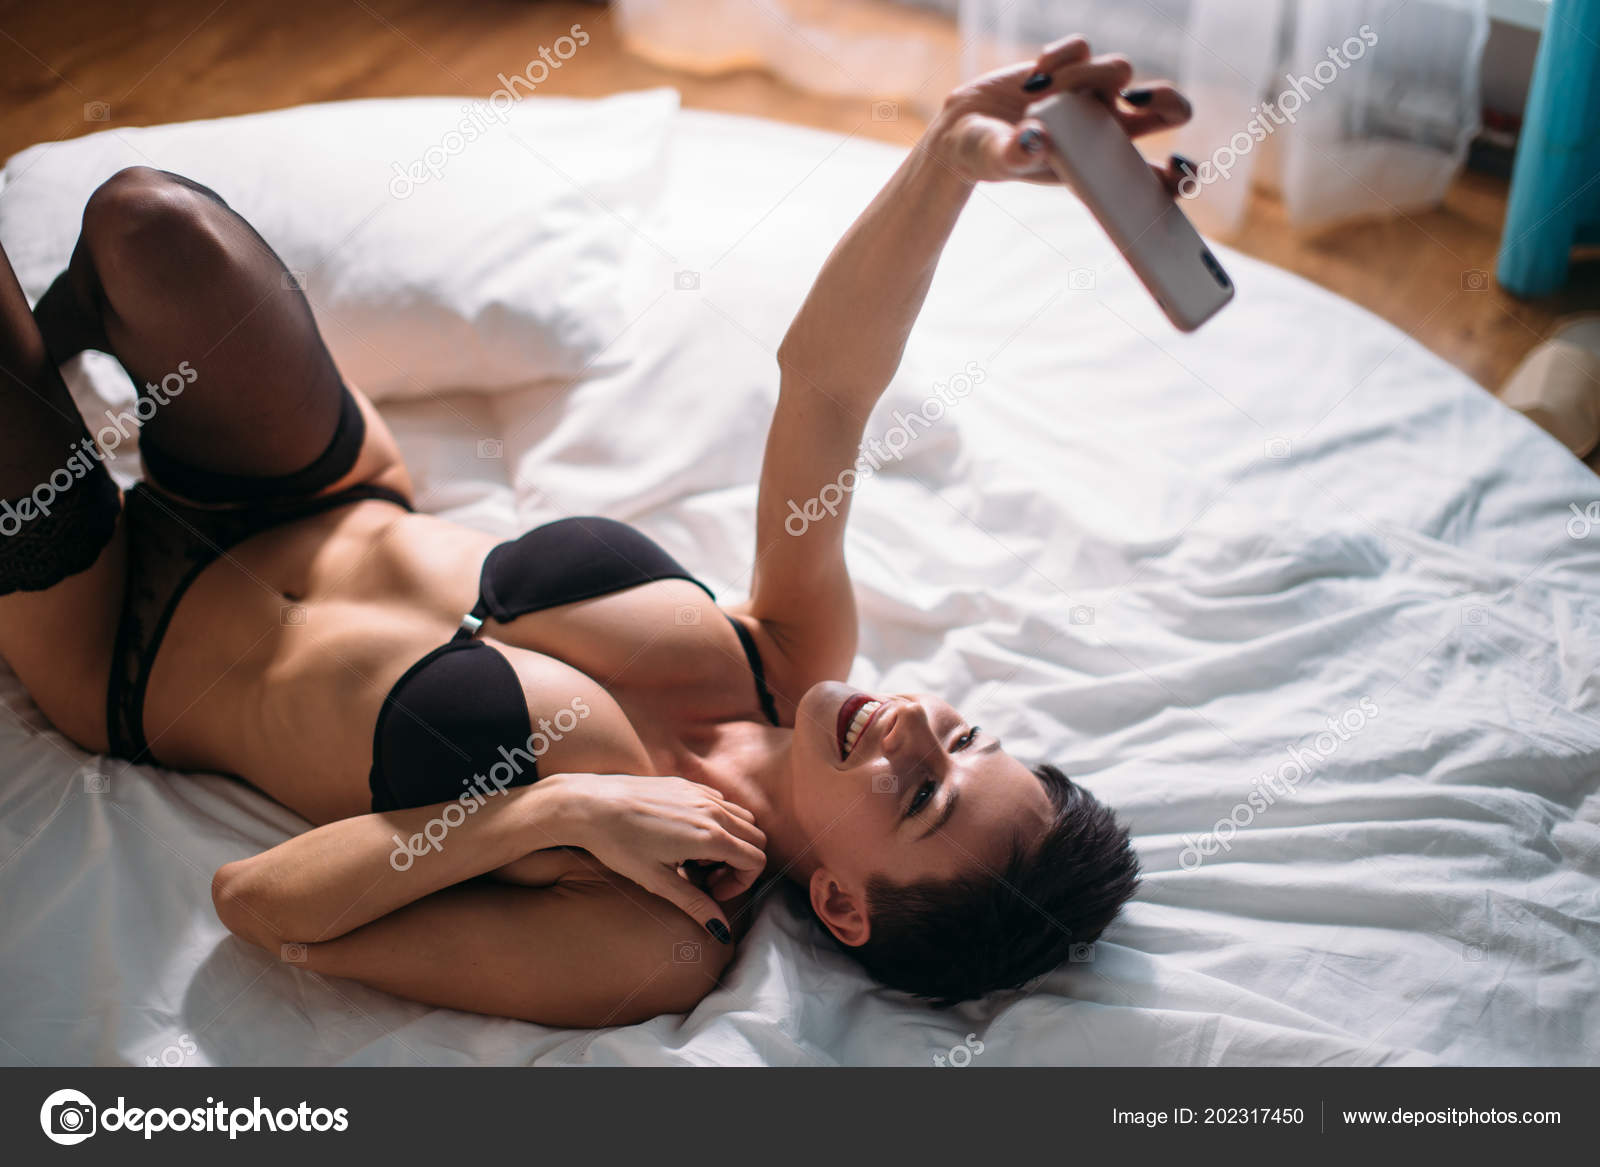 sexy stockings selfie